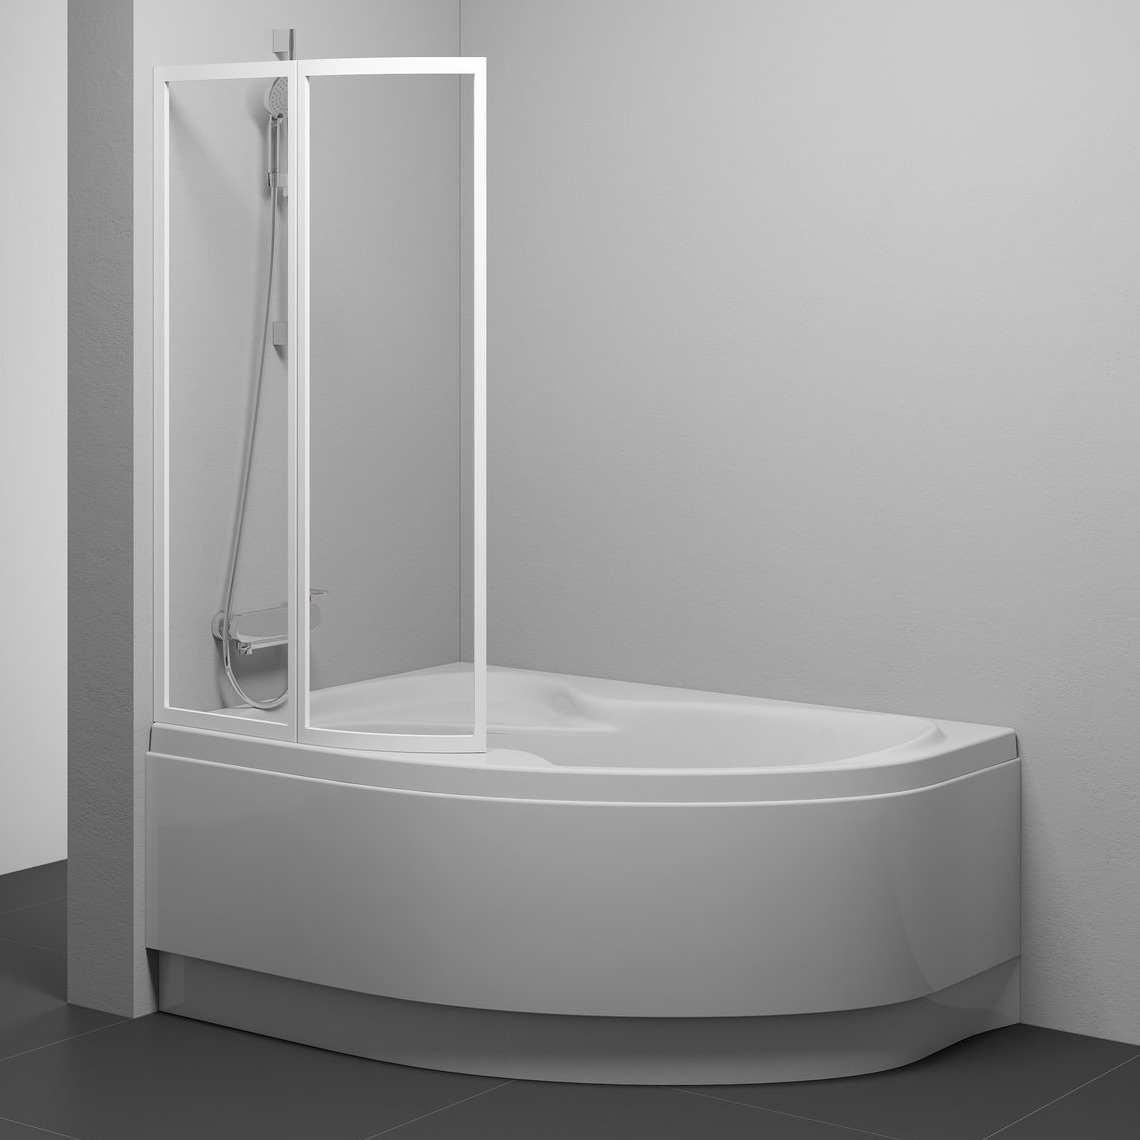 Шторка стеклянная для ванны двухсекционная распашная 150x107см RAVAK ROSA VSK2 L стекло прозрачное 3мм профиль белый 76LB0100Z1